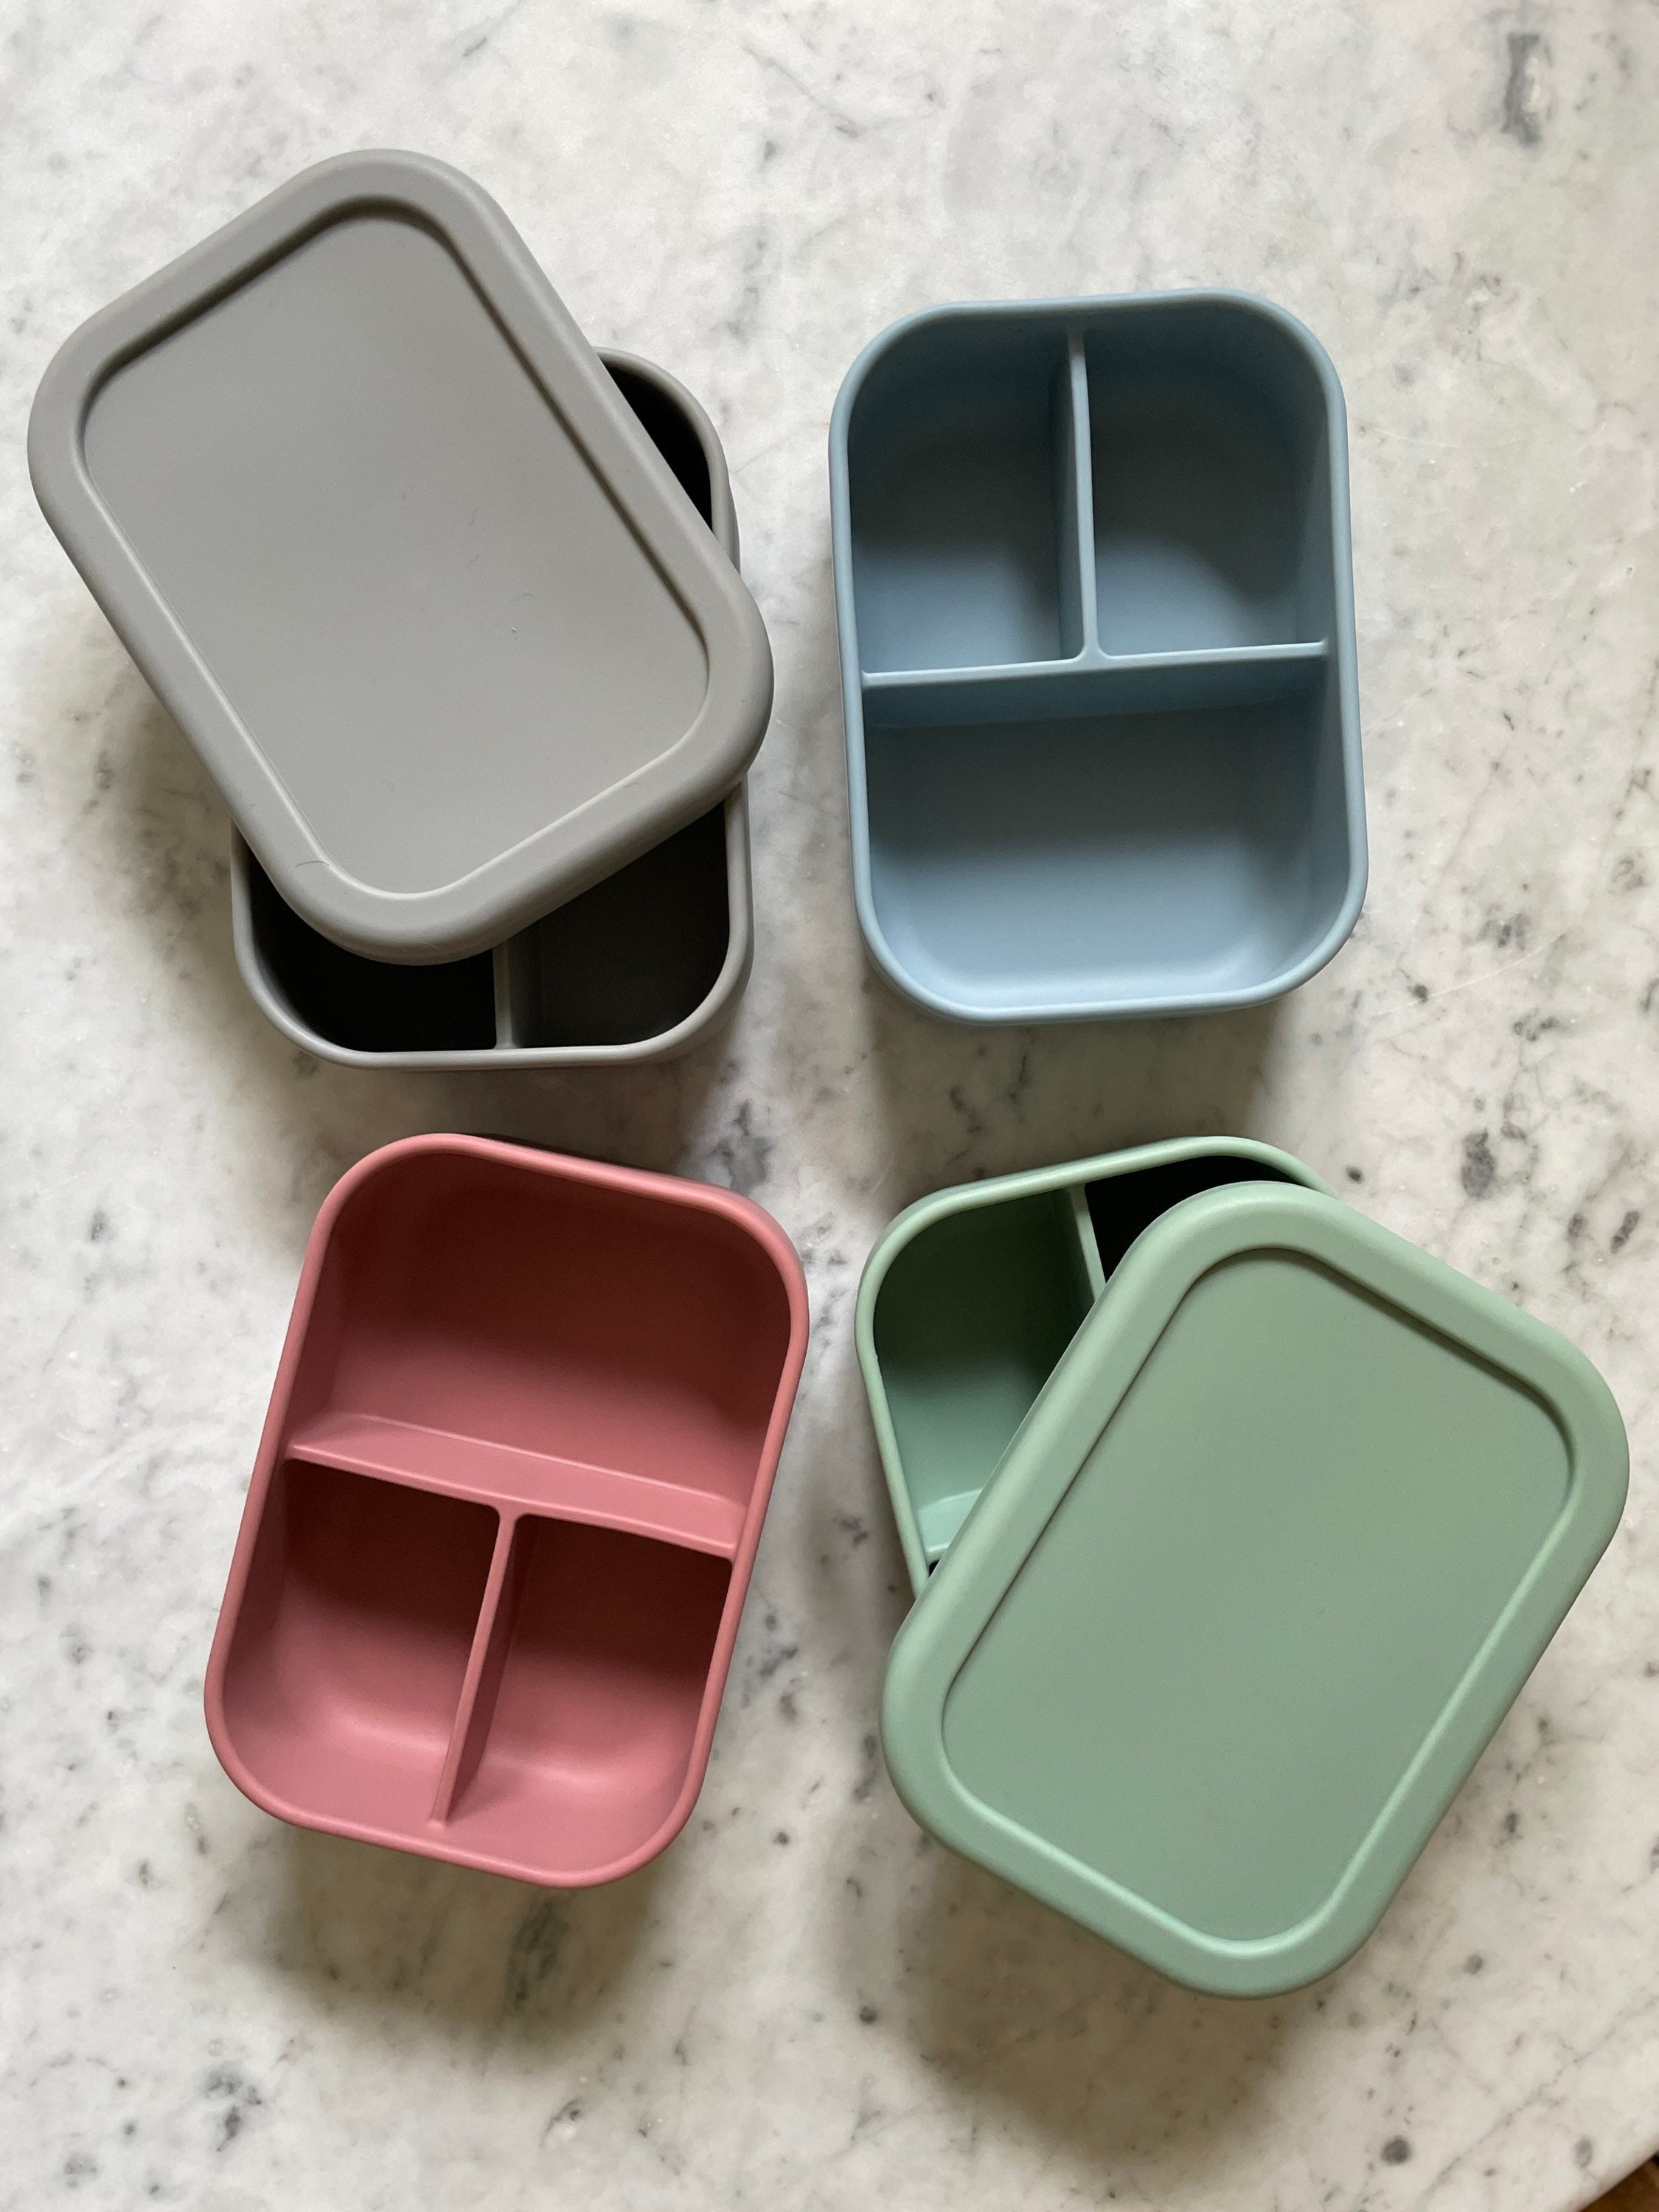 Silicone Bento Box - Shop Bariatric Lunch Box